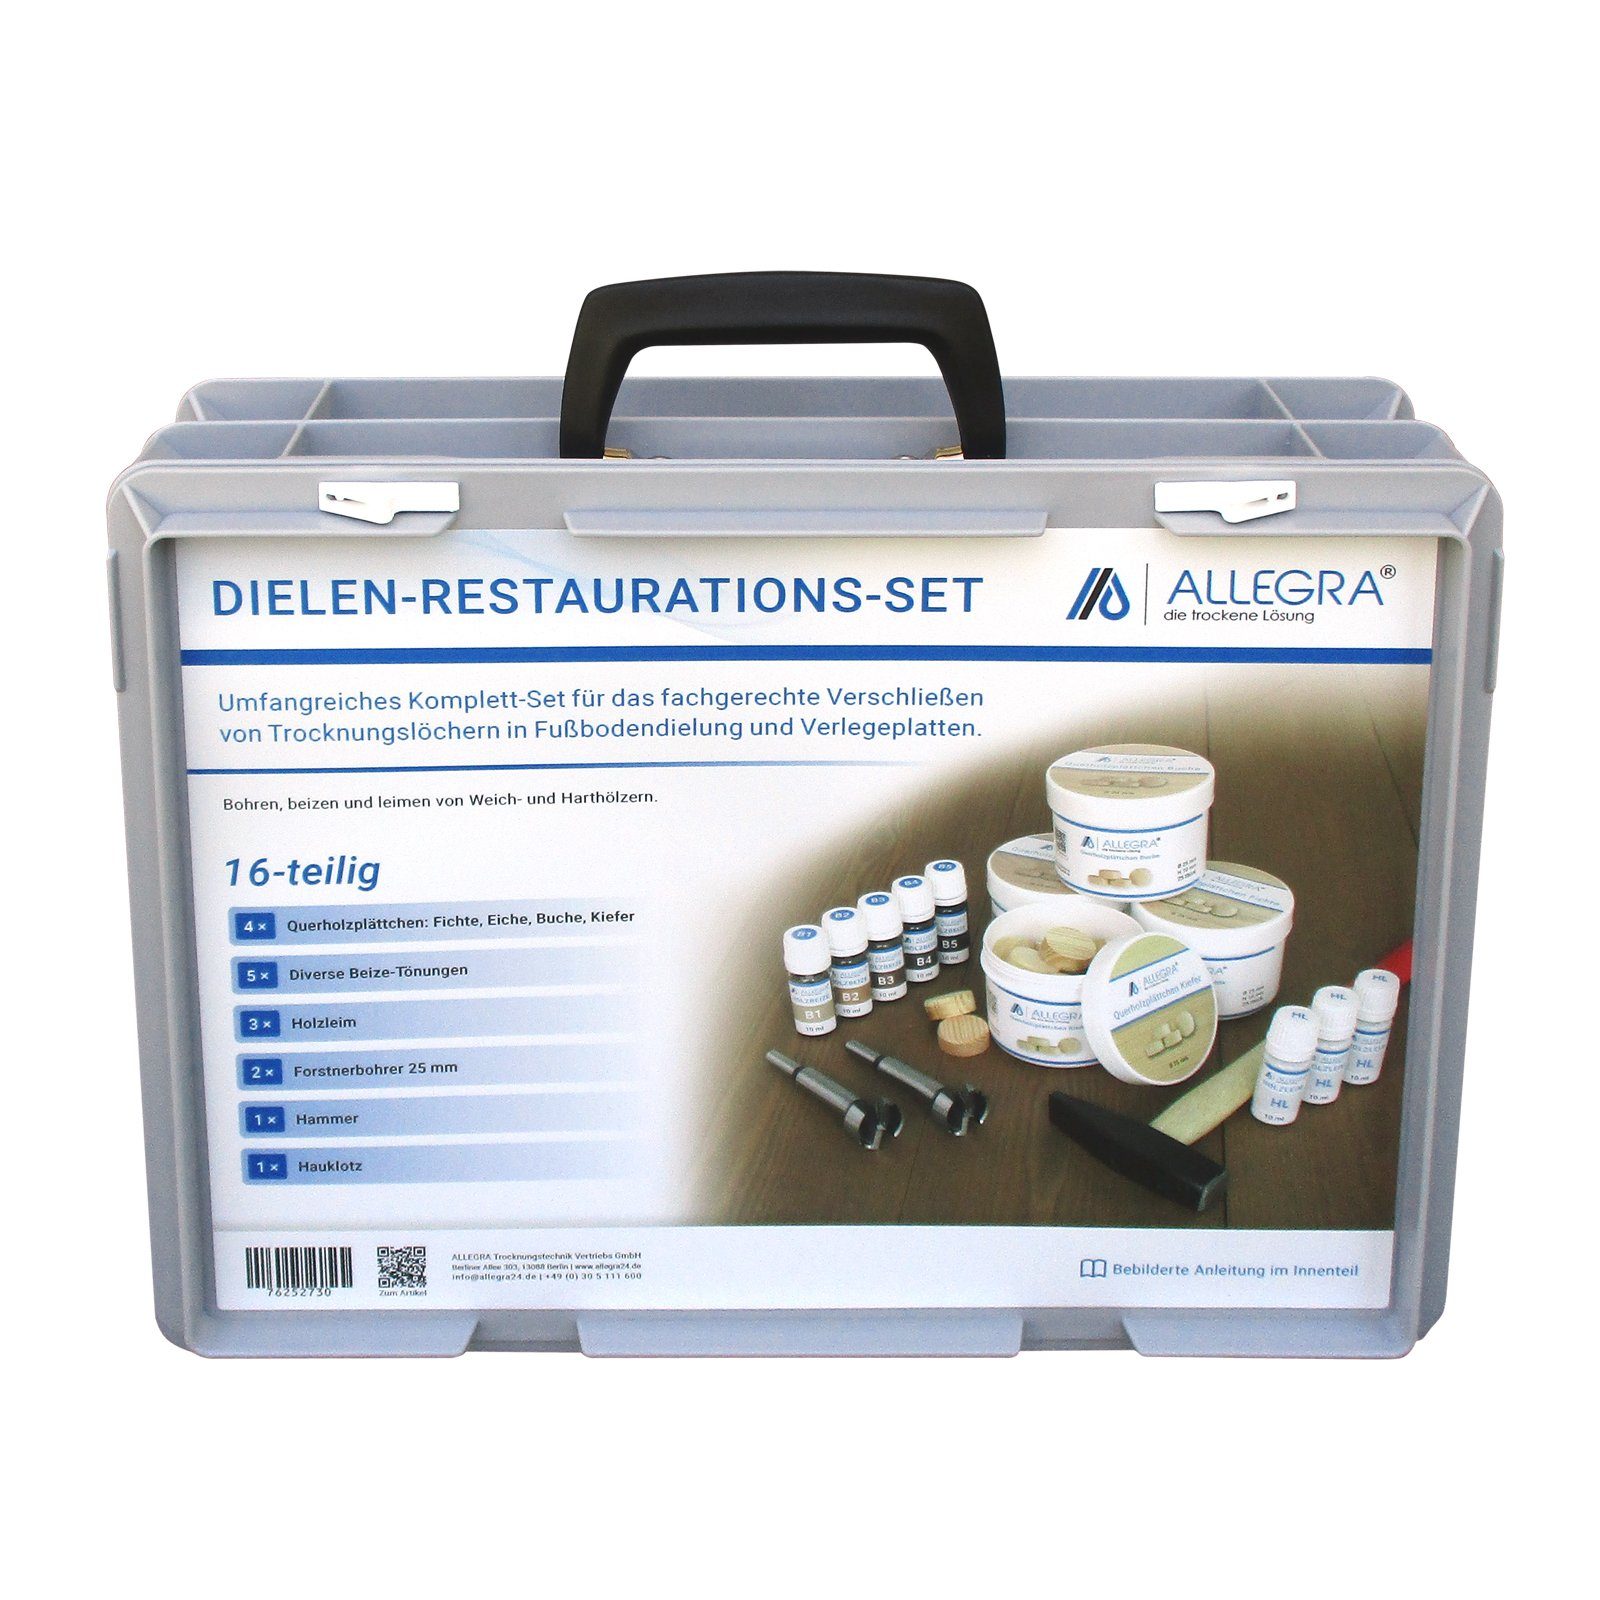 Dielen-Restaurations-Set ALLEGRA Werkzeugset